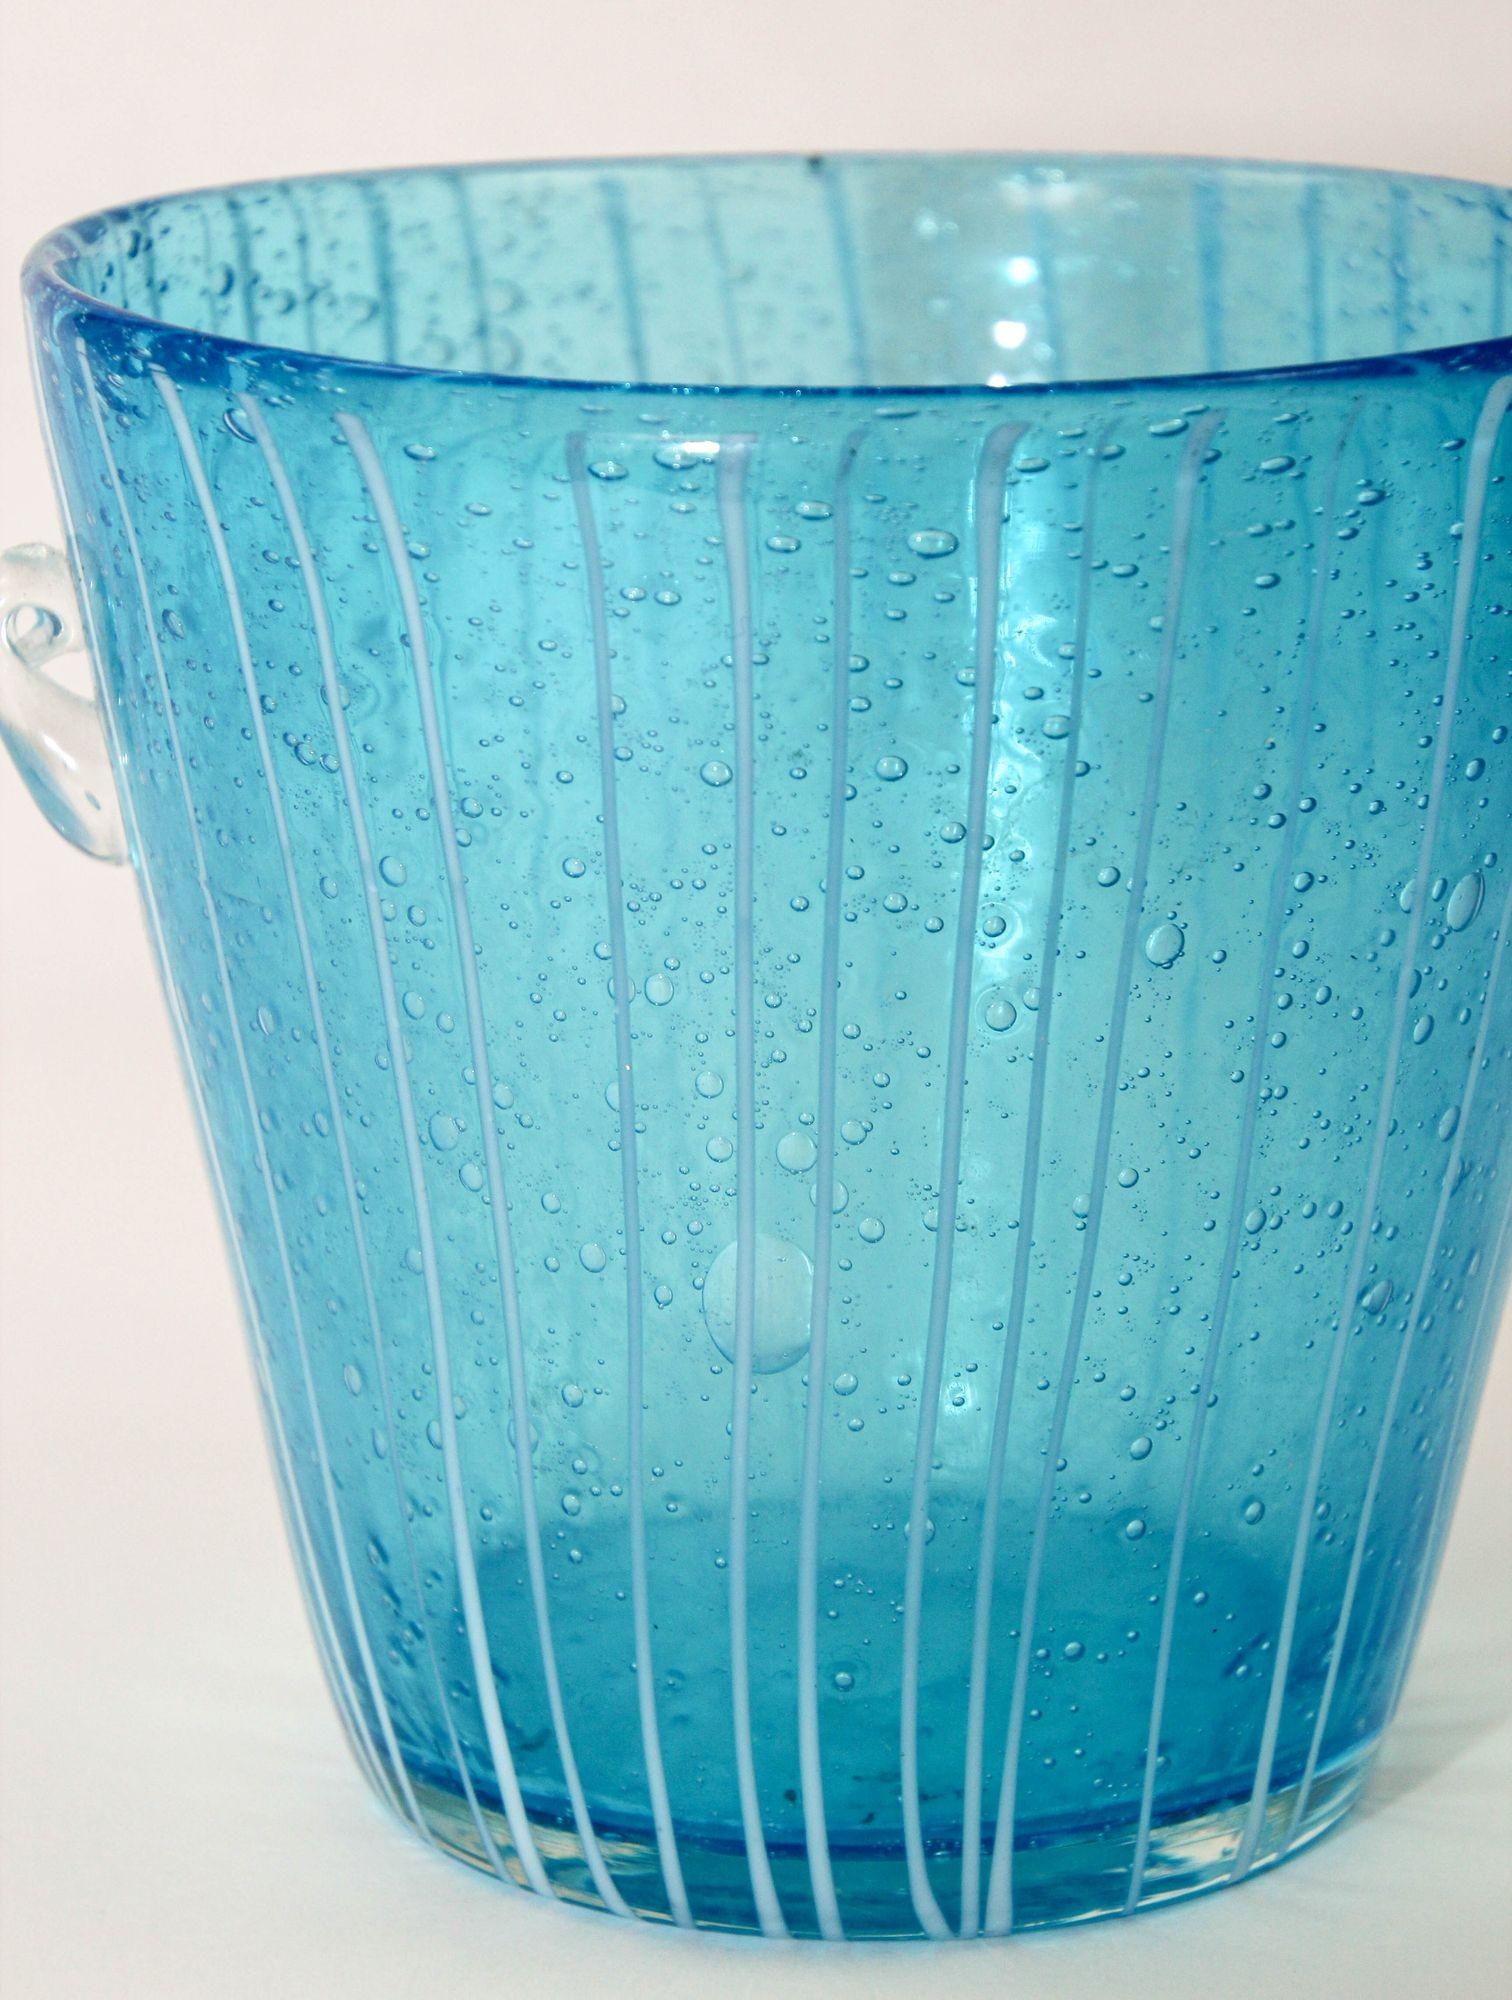 1980 Vintage Murano Light Blue White and Clear crystal Wine Cooler Ice Bucket Made in Italy.
Seau à glace artisanal en verre d'art vénitien italien Murano Venini .
Voici un délicat seau à glace en cristal soufflé de Murano.
Il a une forme évasée de